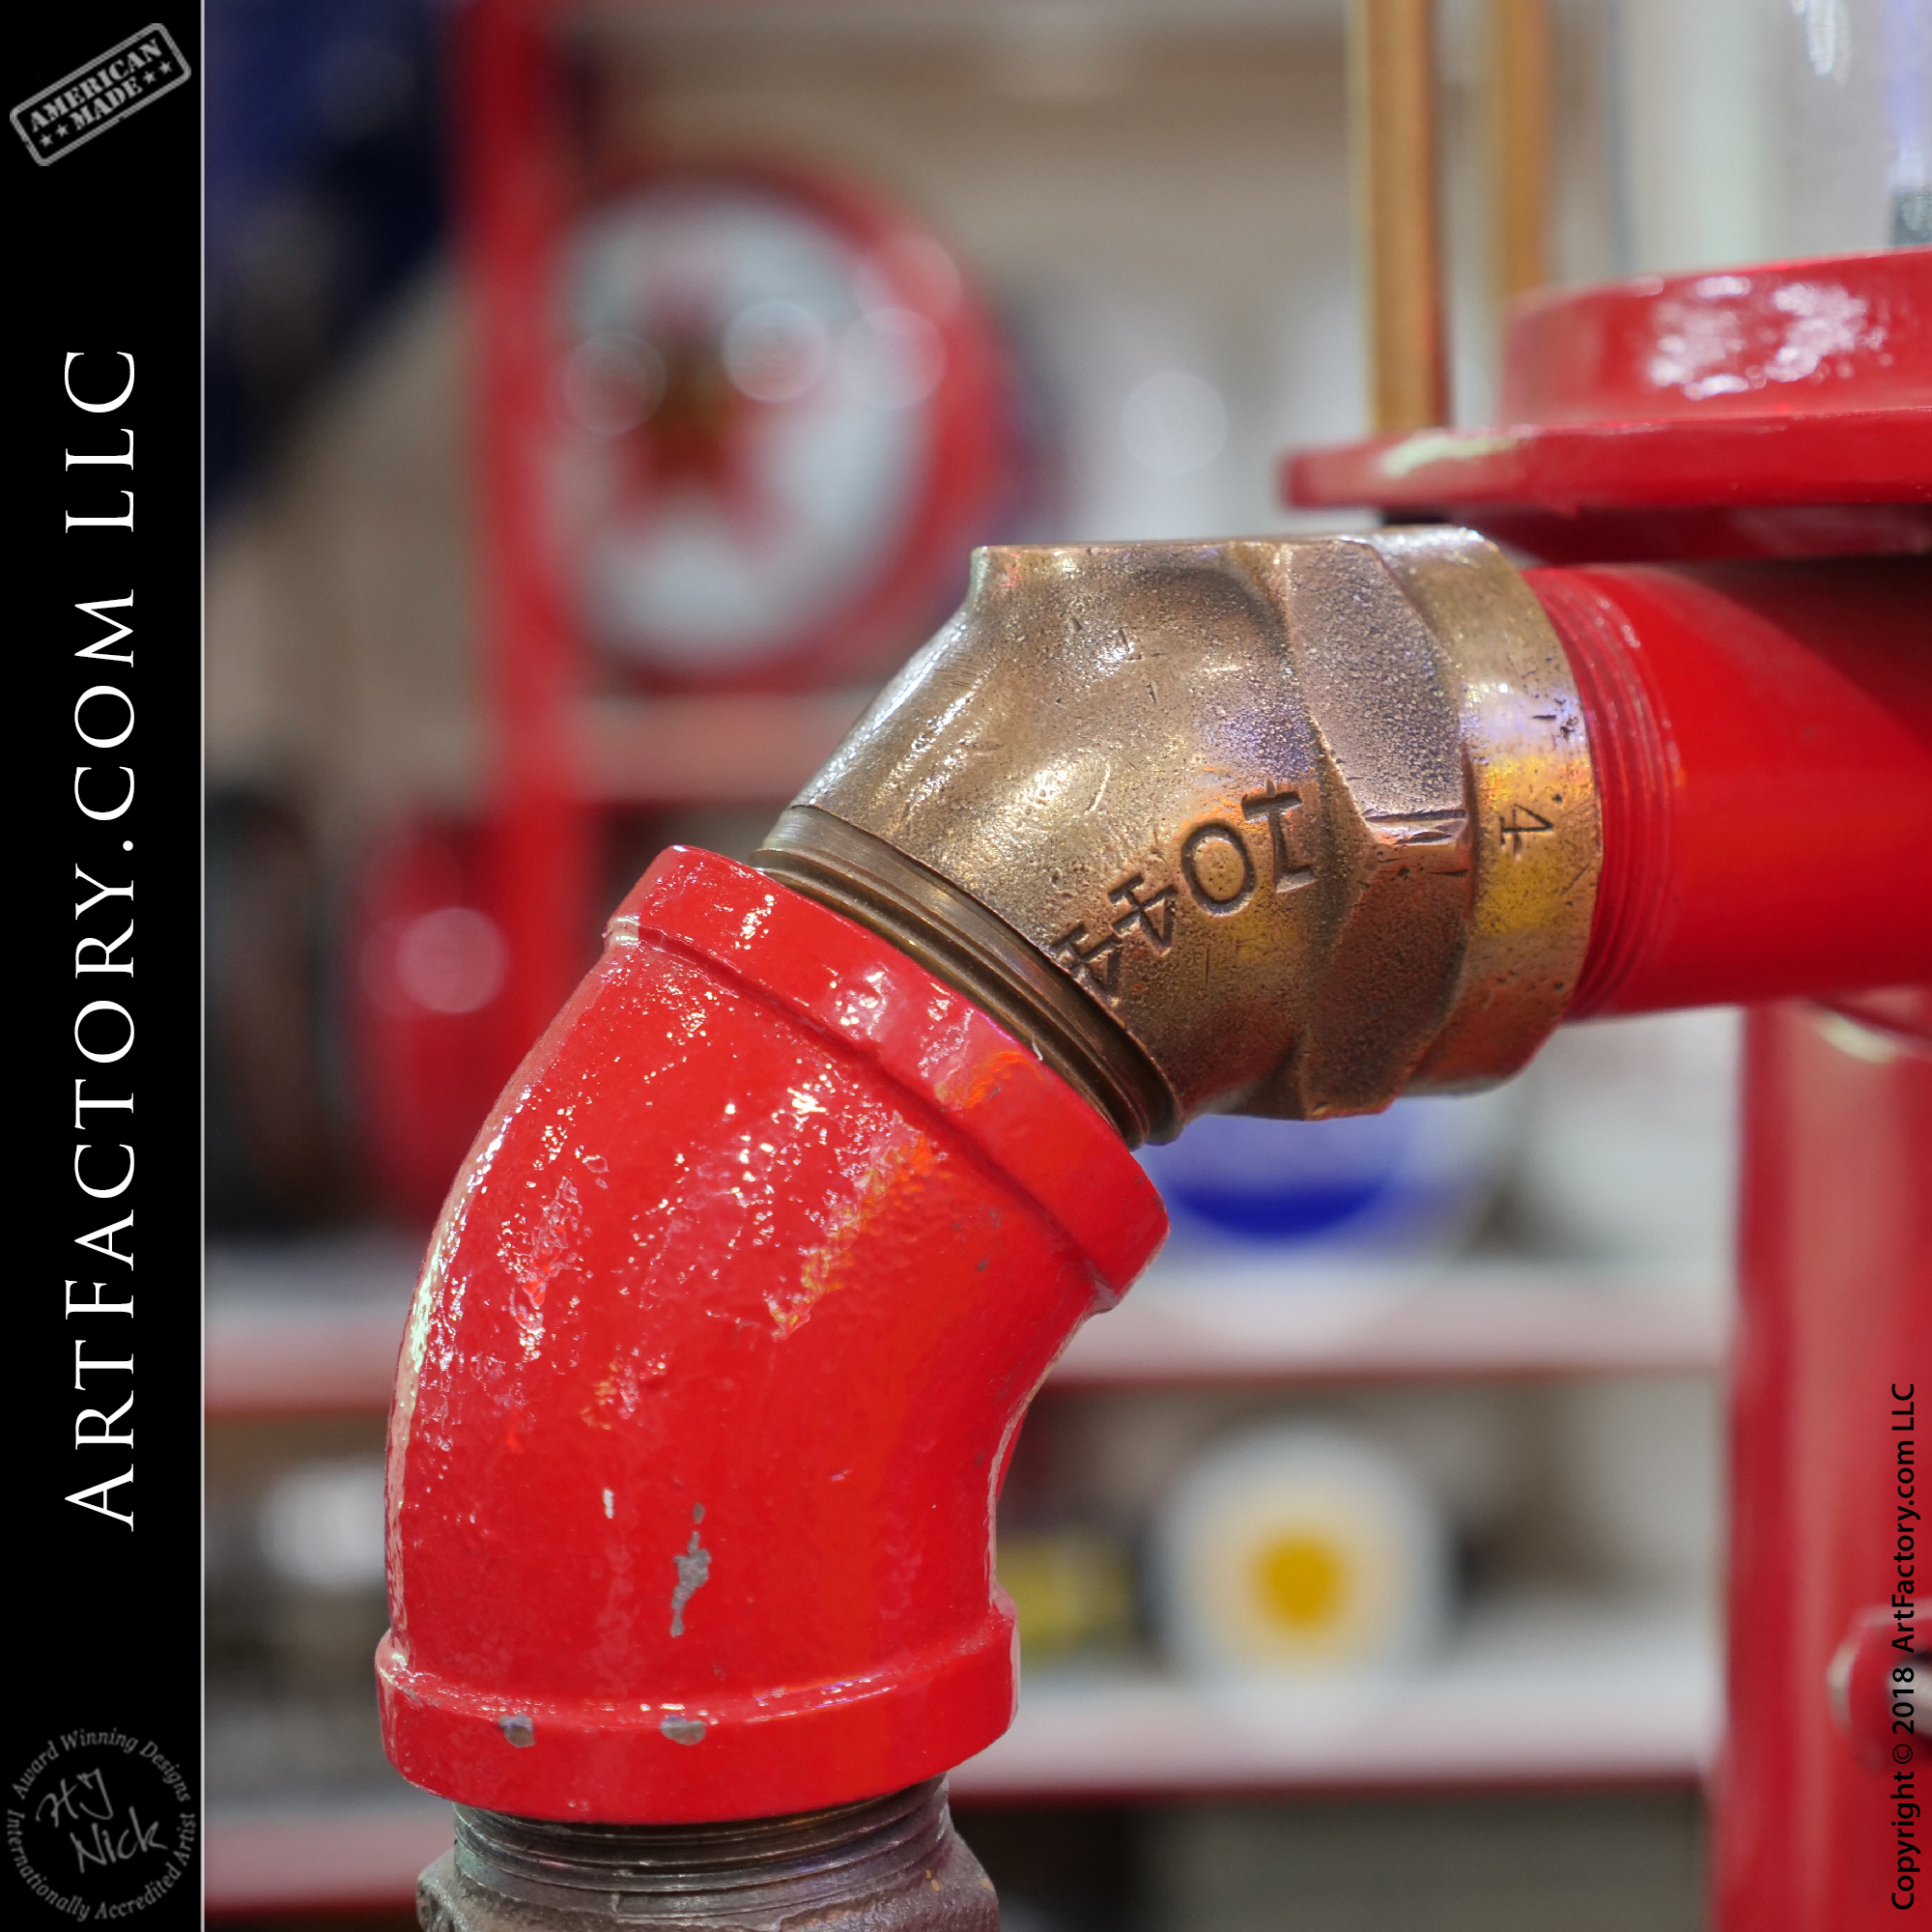 Vintage Texaco Gas Pump